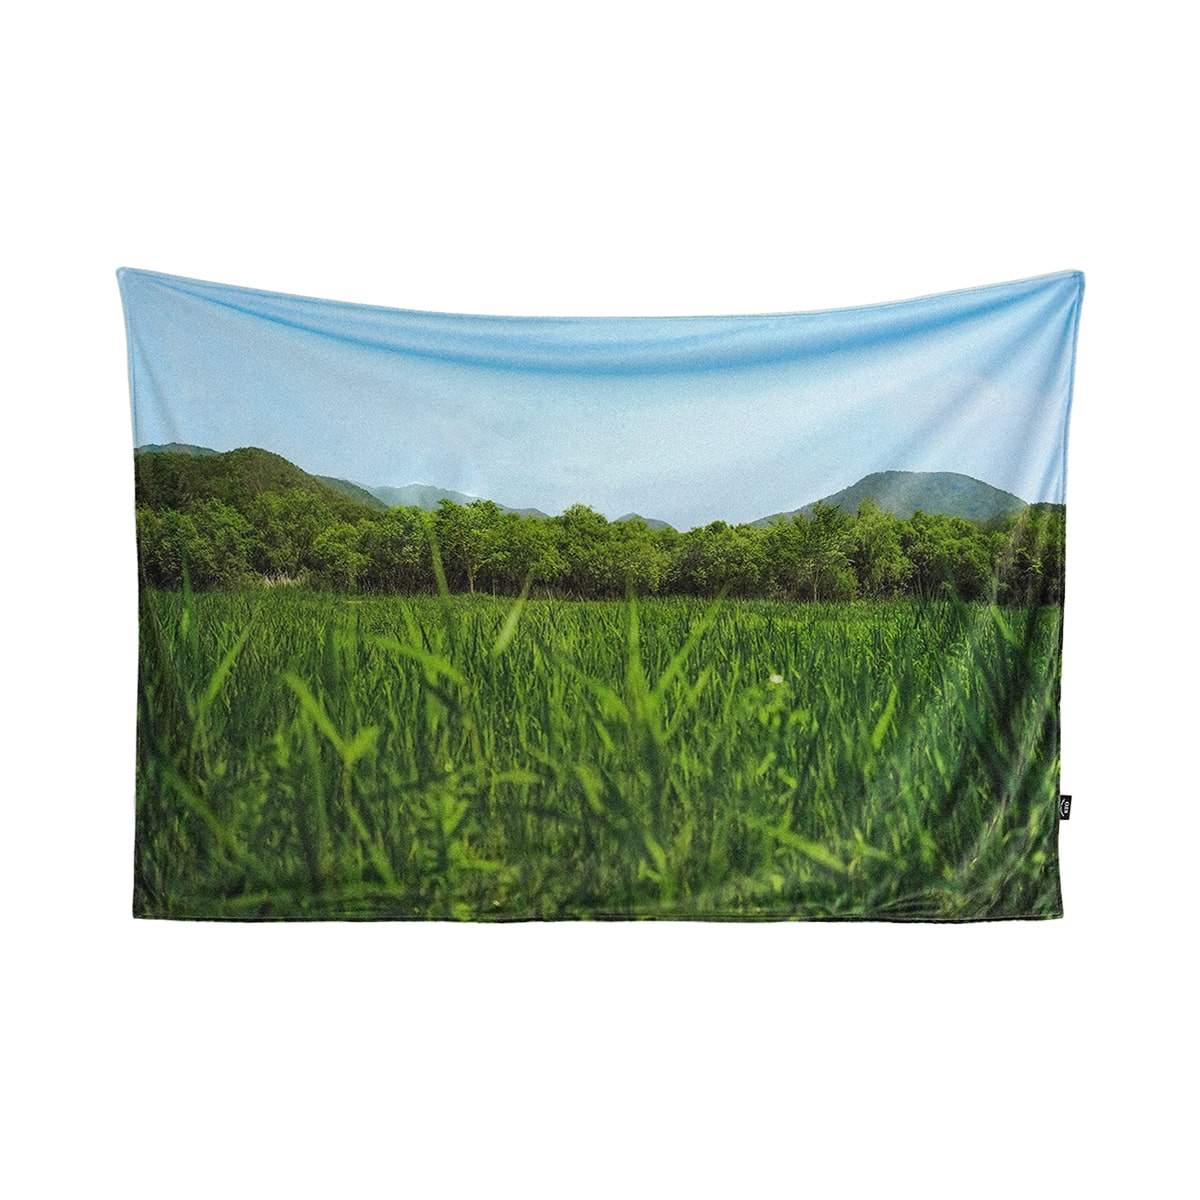 green grass blanket